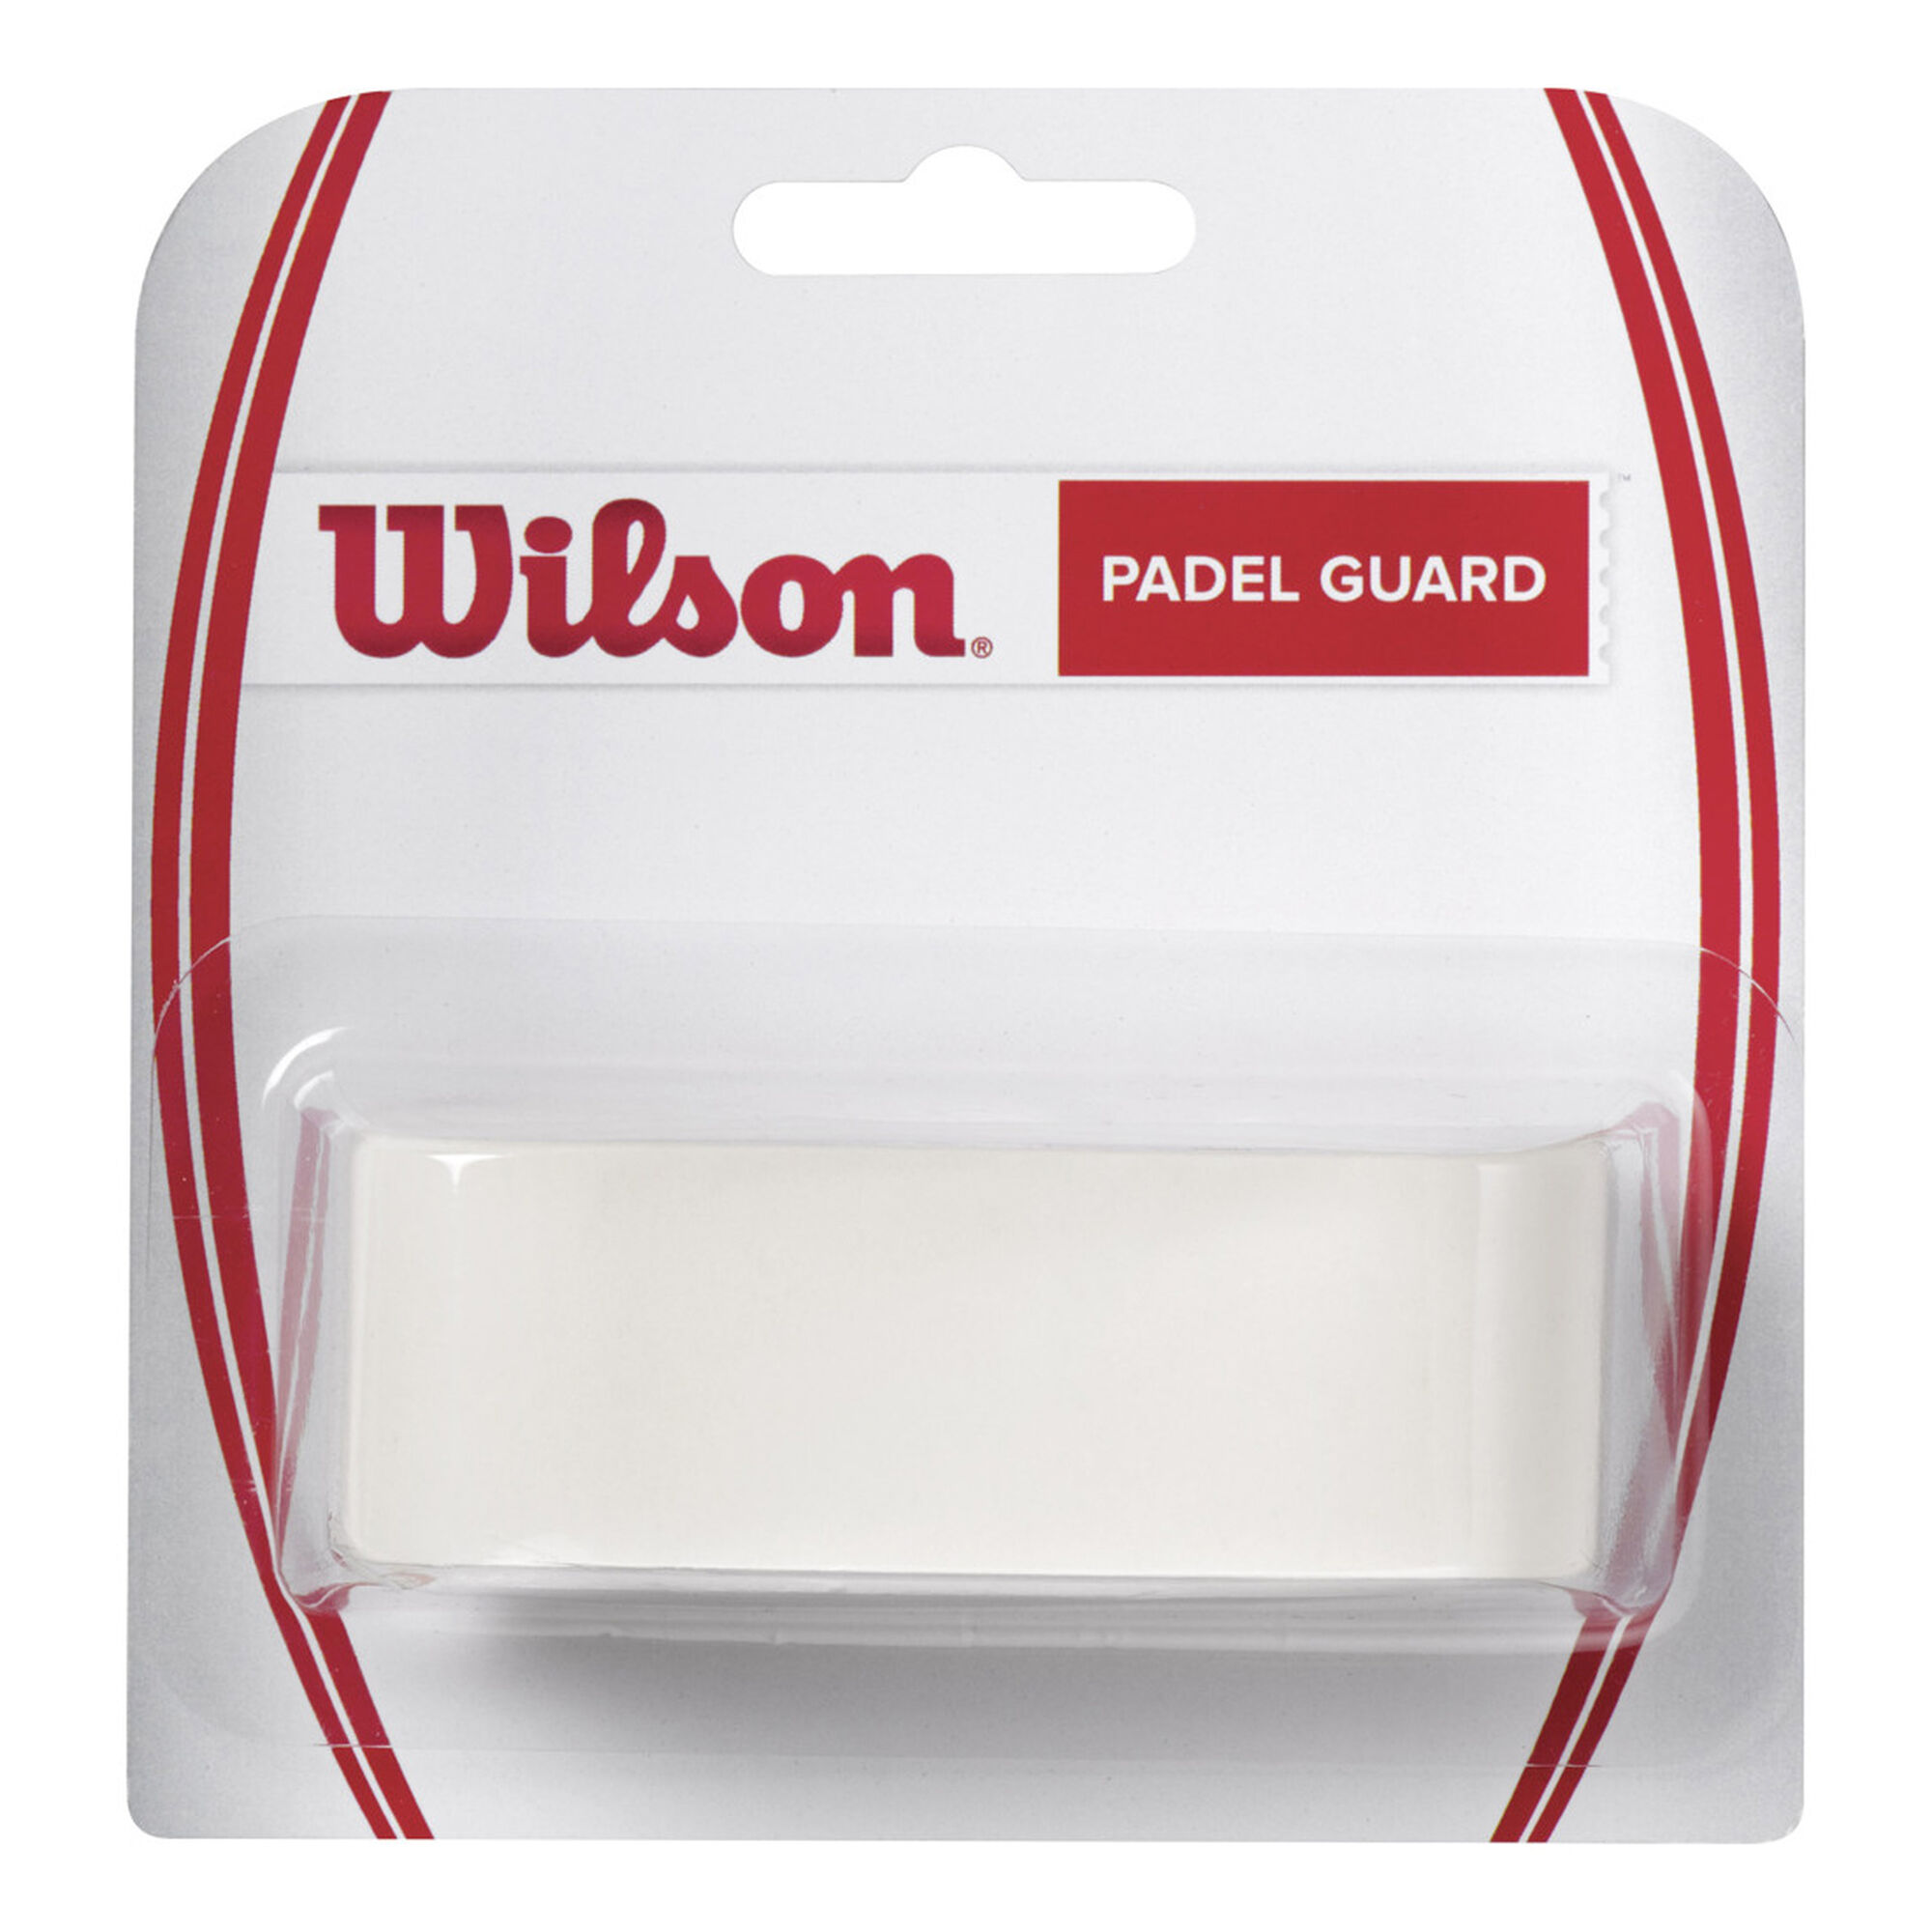 Buy Wilson Padel Guard online